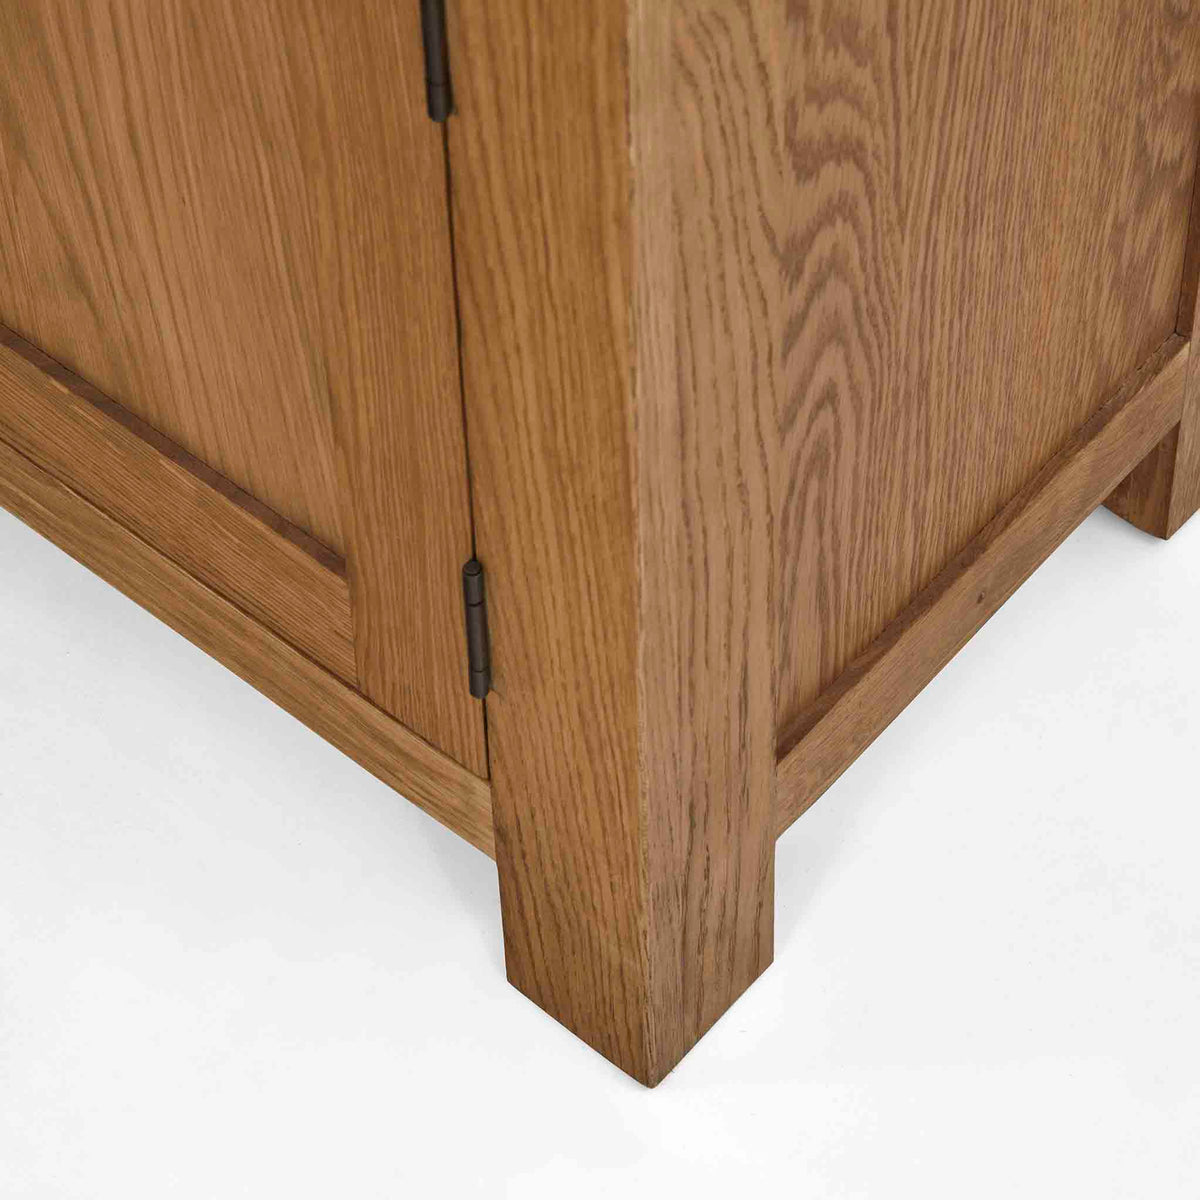 Zelah Oak Large Dresser - Feet on base of Dresser